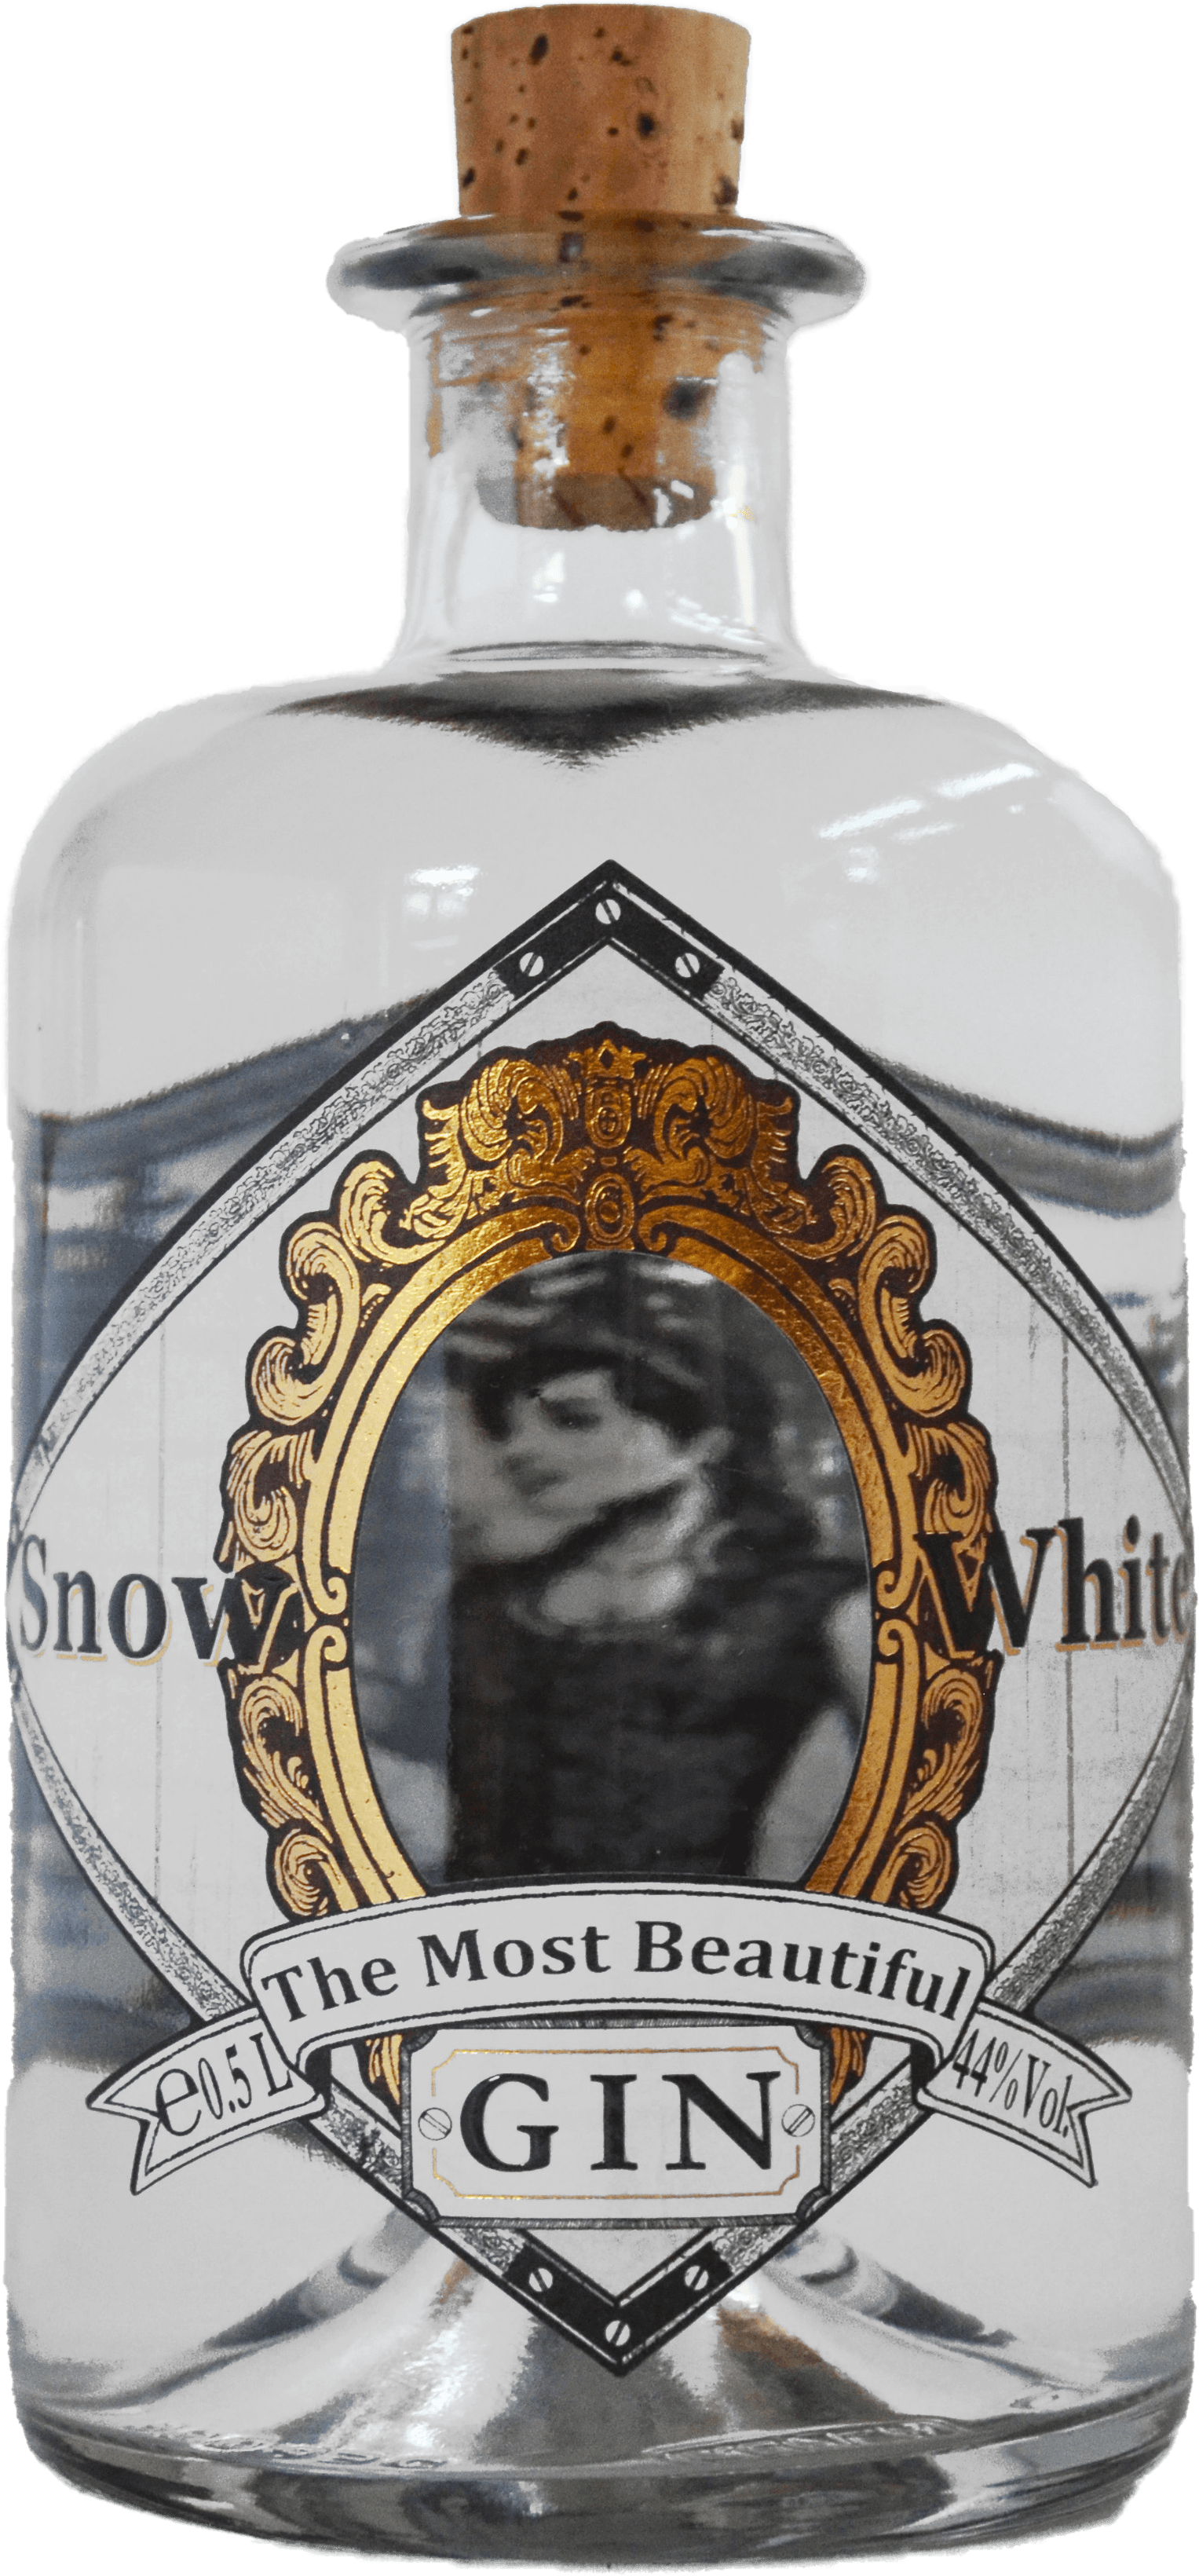 Snow White Gin von Eichenberg Manufaktur aus Bayern, Botanicals: Wacholderbeeren, Apfel, Zitrone, Ingwerwurzel, Lavendel, Tannennadeln und Zimtrinde, 44% Alkoholgehalt.